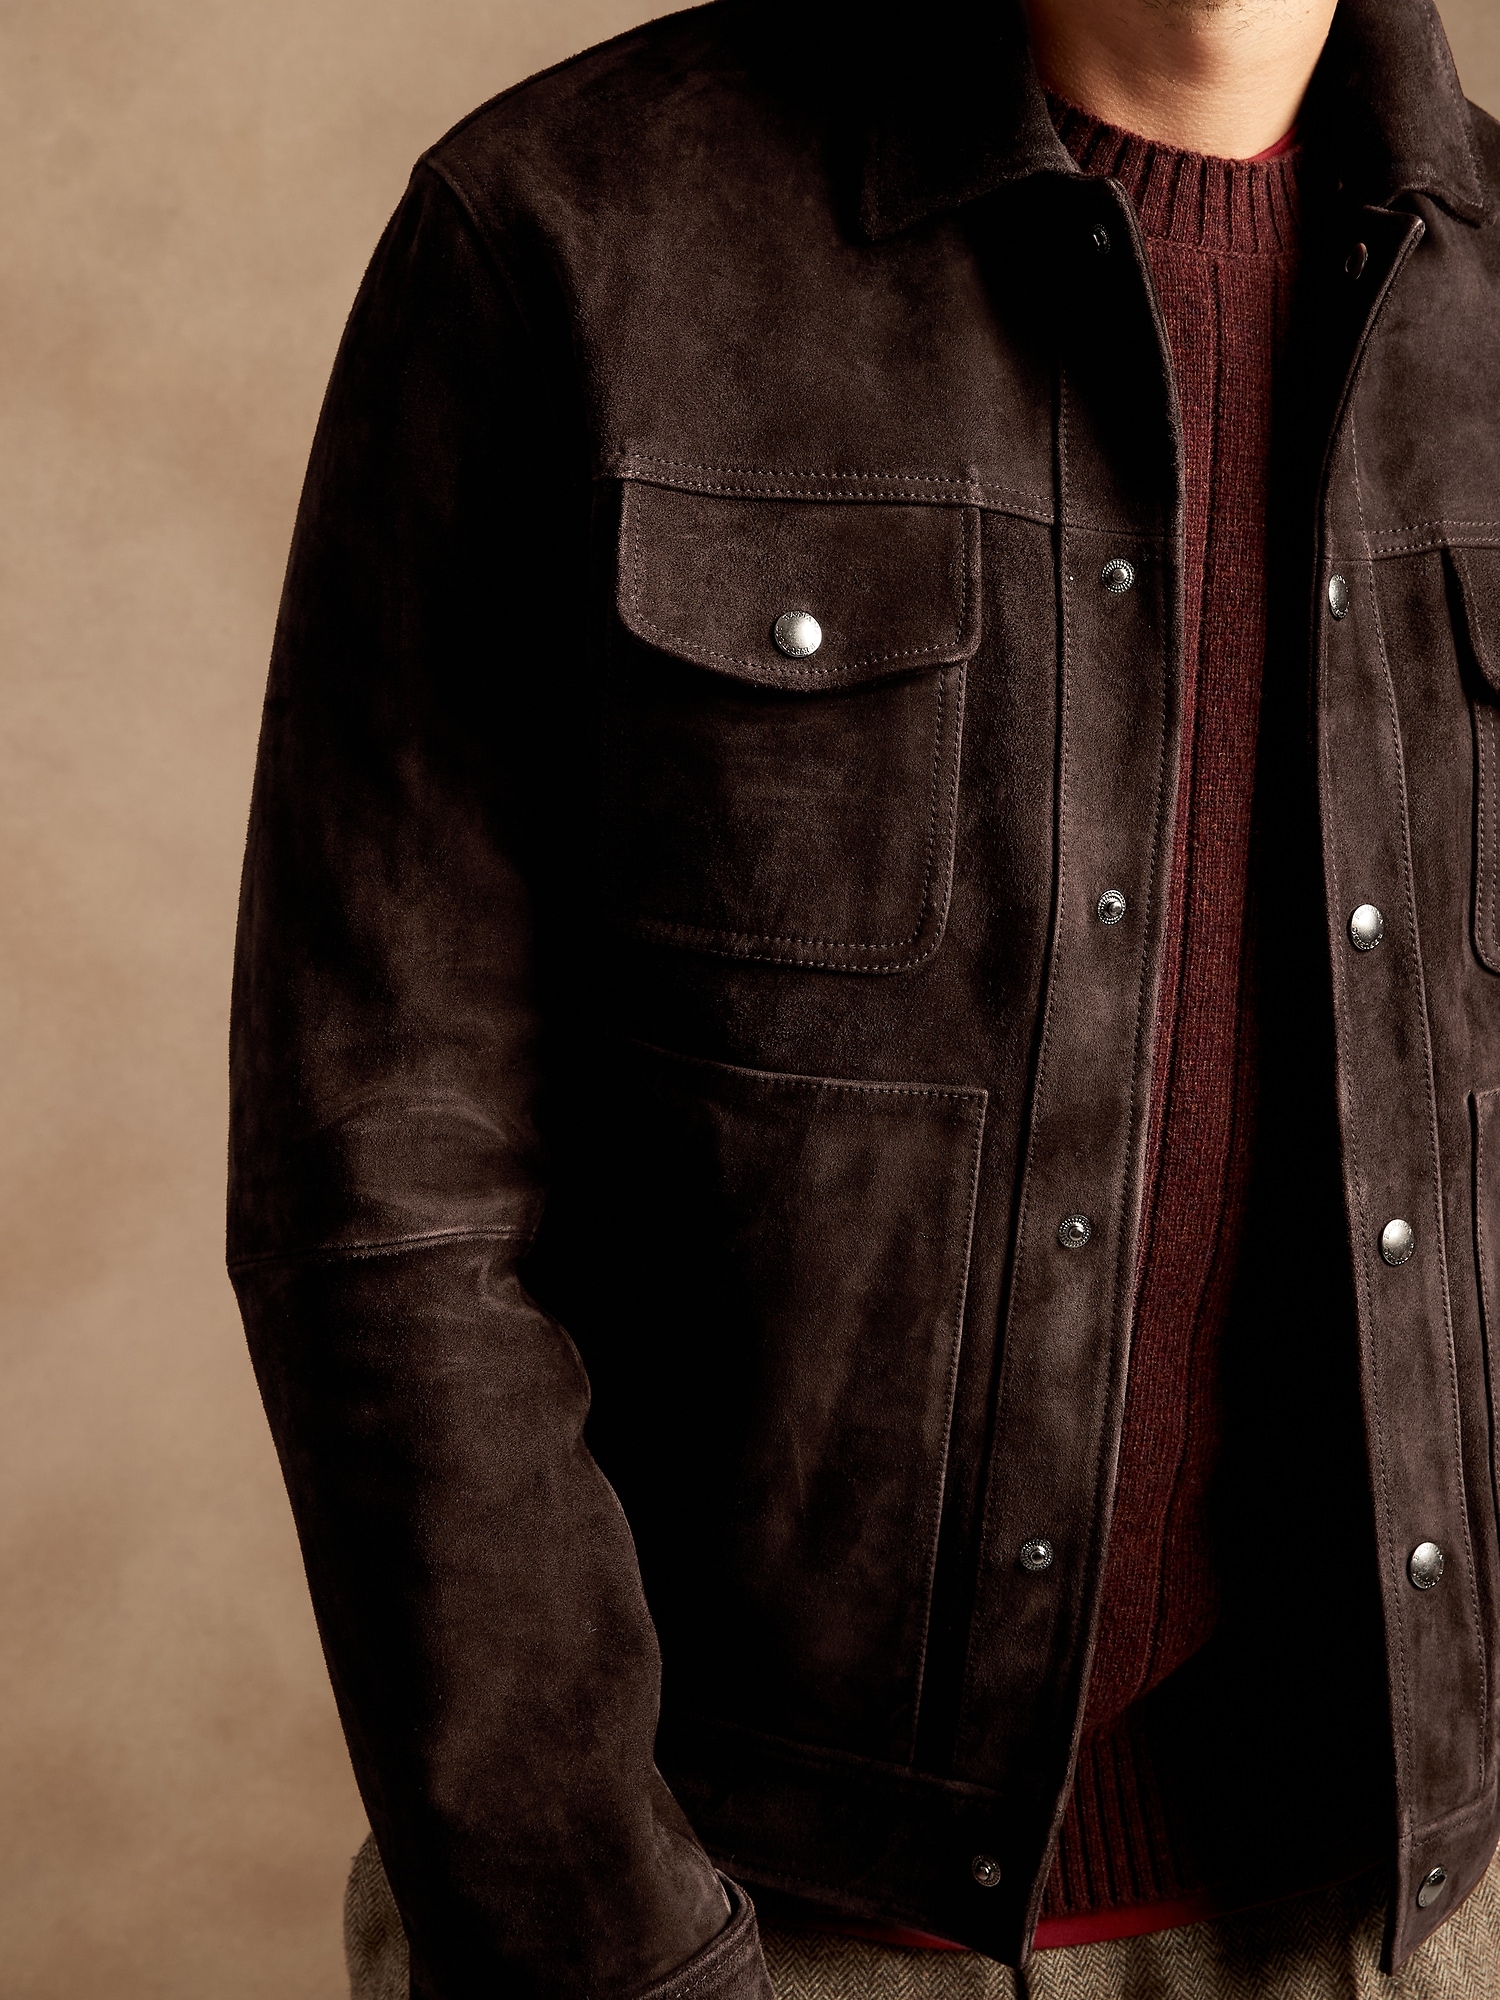 即出荷可能 ''BANANA REPUBLIC''Suede Jacket Leather レザージャケット